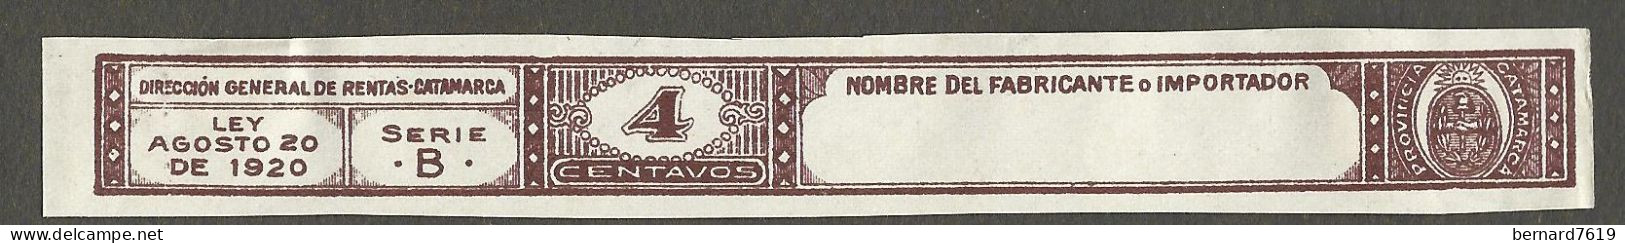 Timbre  -erinnophilie -  Tabac   Tabacos  - Direccion General De Rentas  Catamarca -  Ley Agosto 20 De 1920 - 4 Centavos - Tobacco